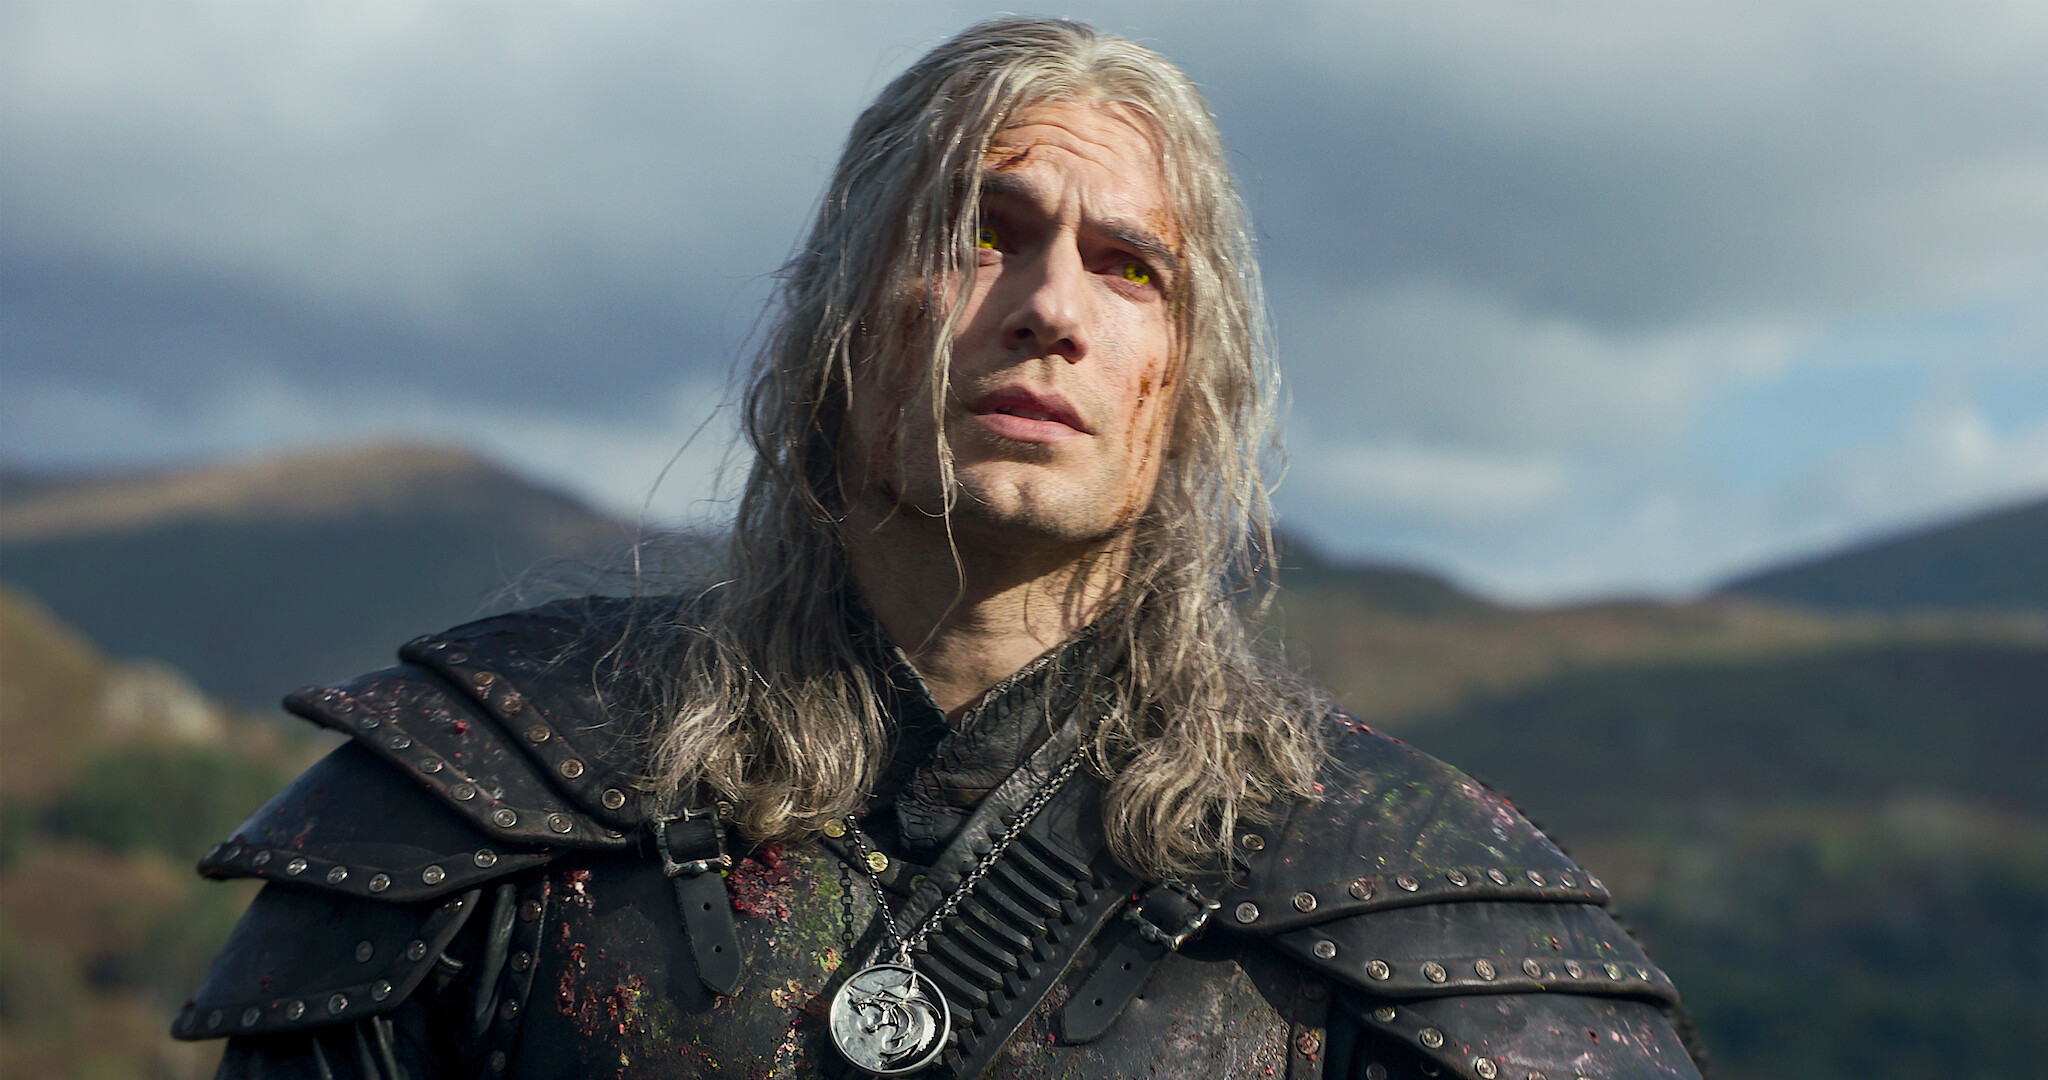 Henry Cavill cast as Geralt for Netflix's Witcher series